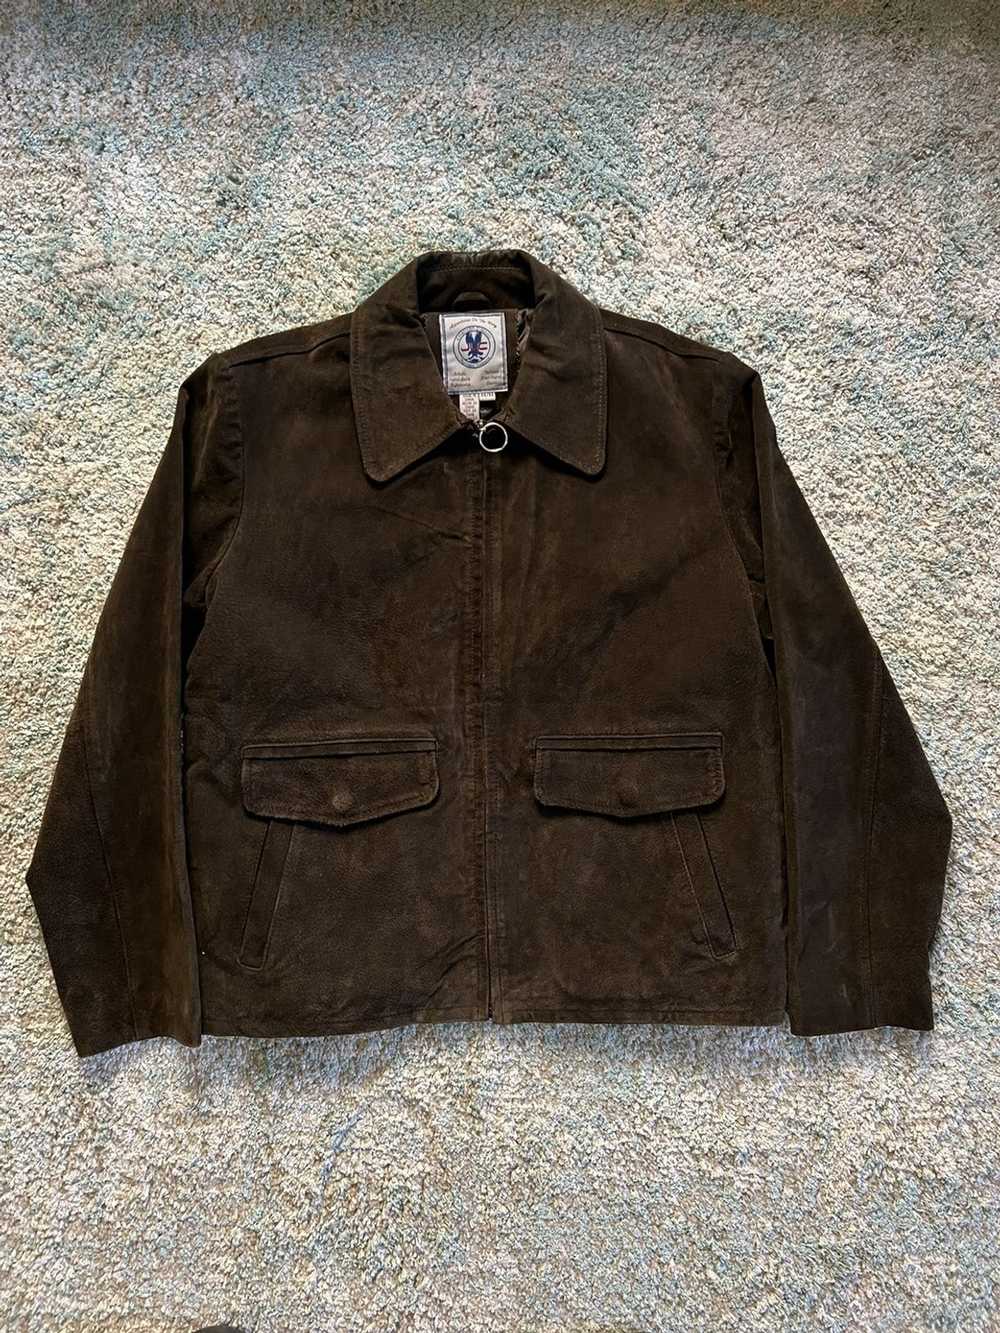 Leather Jacket × Vintage 70s leather jacket - image 1